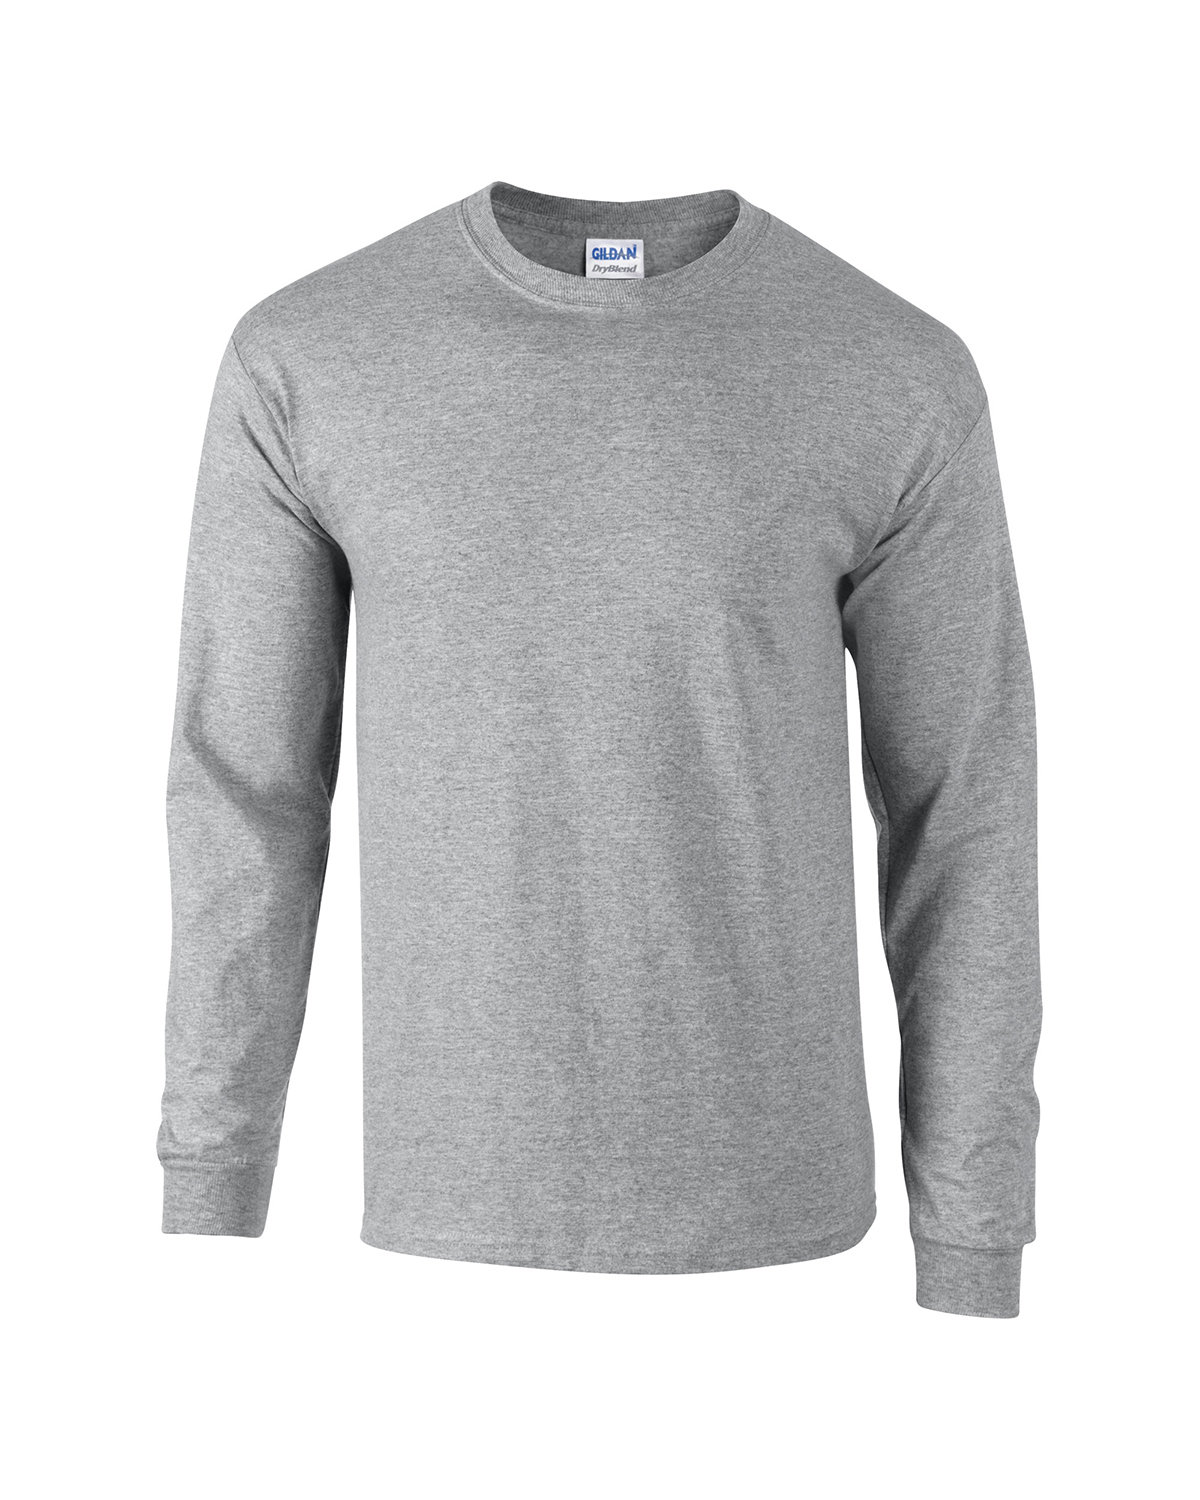 Gildan Adult Long Sleeve T Shirt Alphabroder